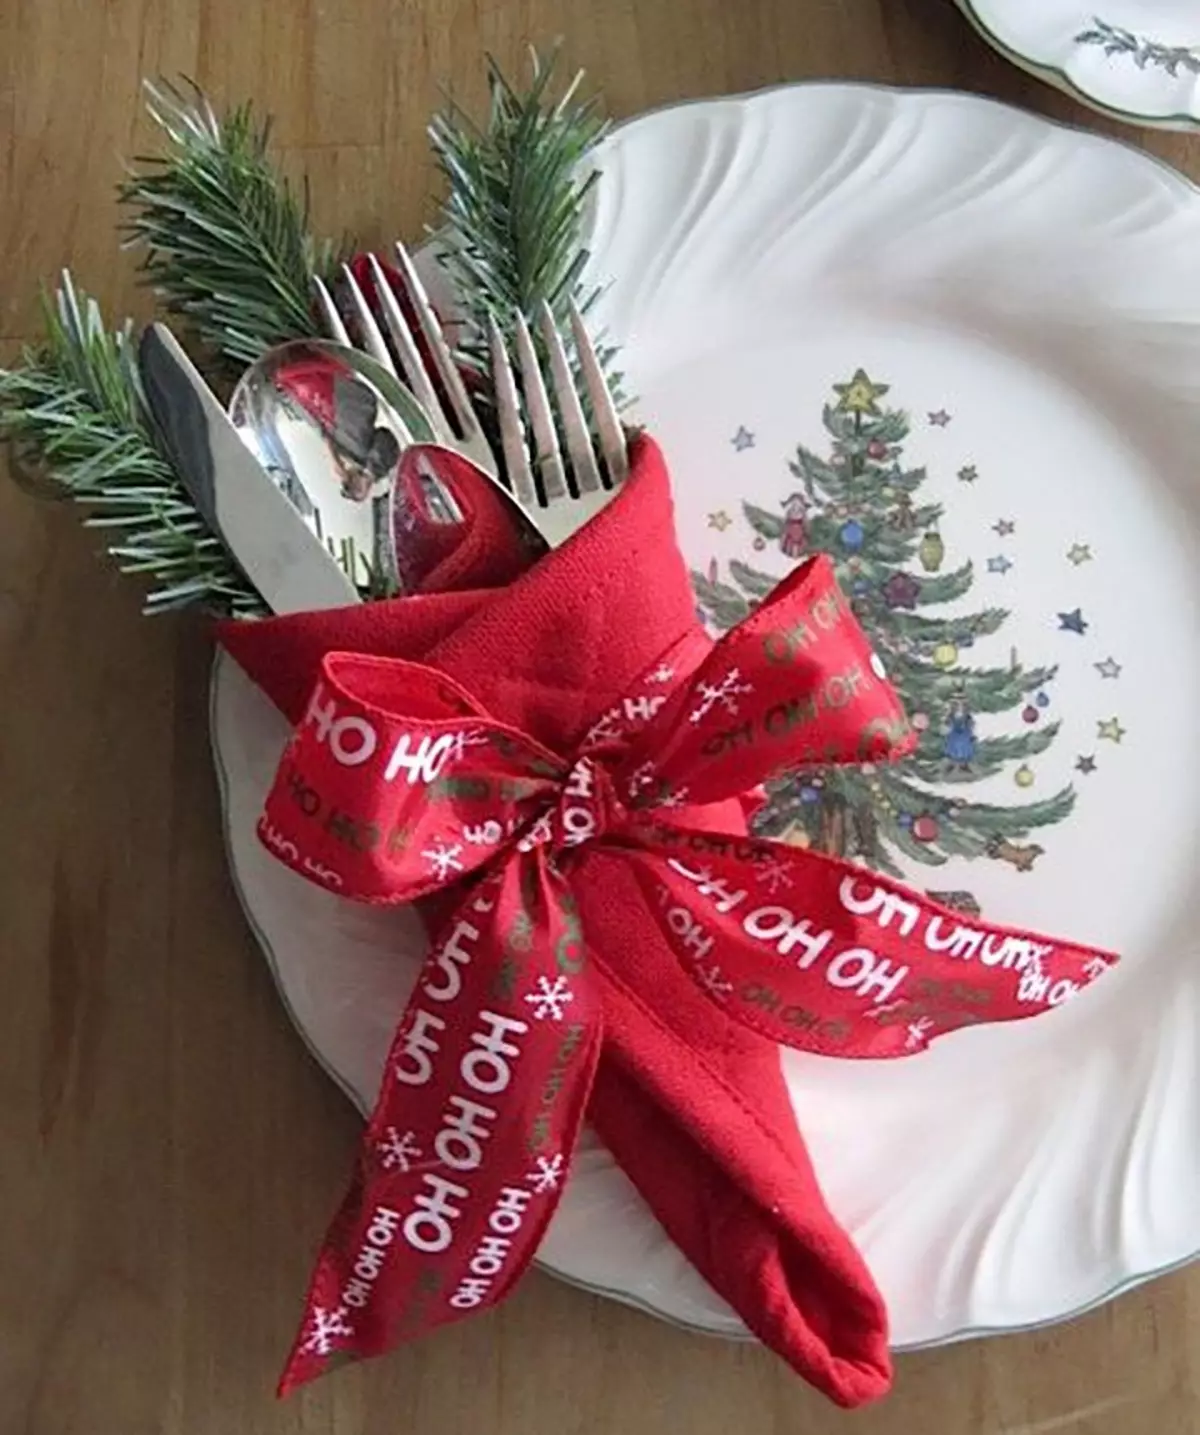 كم هي جميلة لأضعاف المناديل على الطاولة احتفالي؟ 52 صور كيفية طرح المنتج مع شجرة عيد الميلاد، وجعل قطعة من النسيج منديل 19554_51